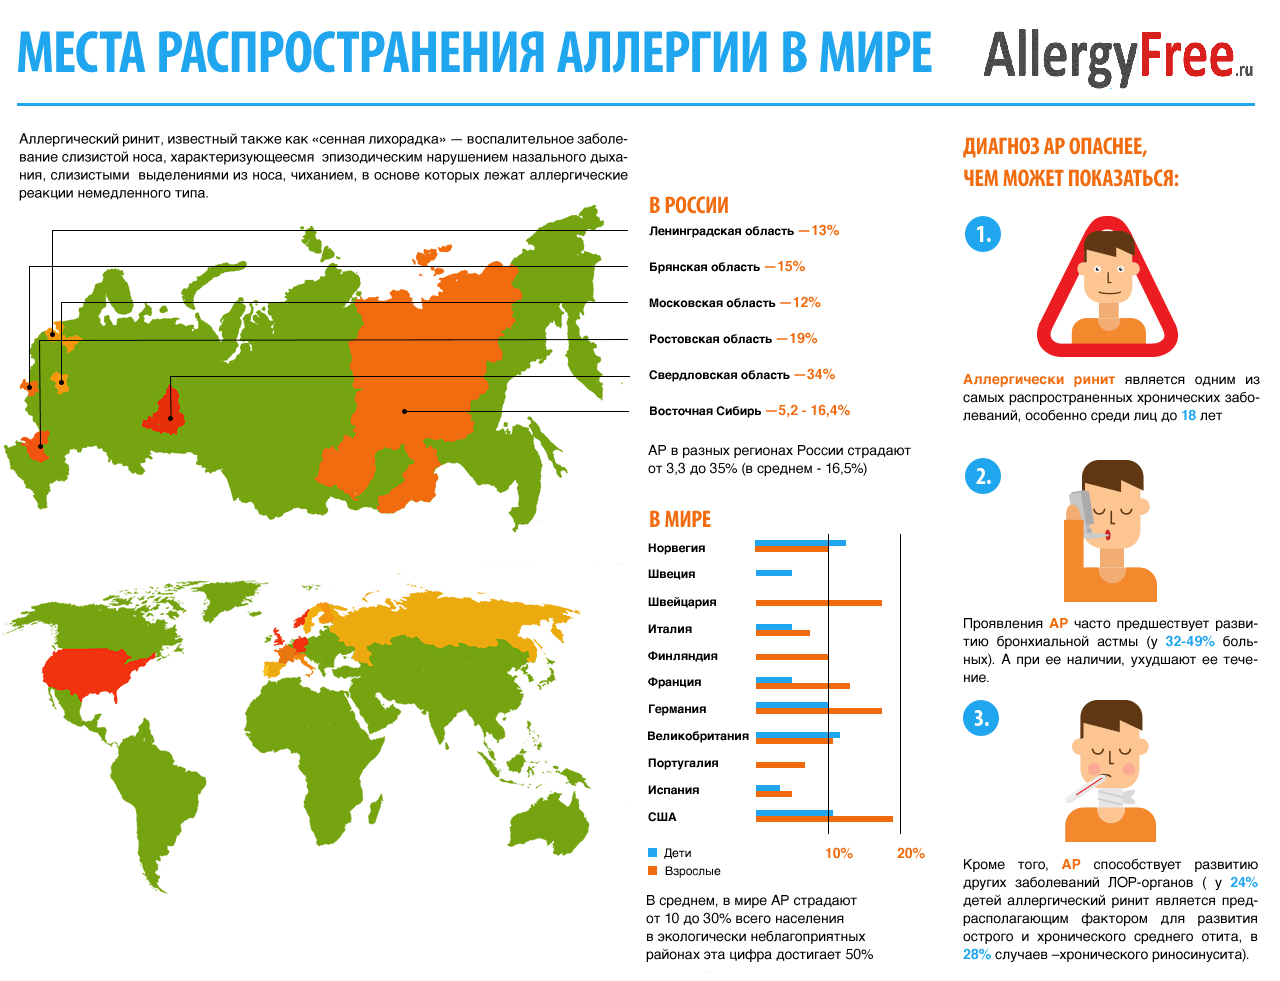 Статистика аллергических заболеваний в мире